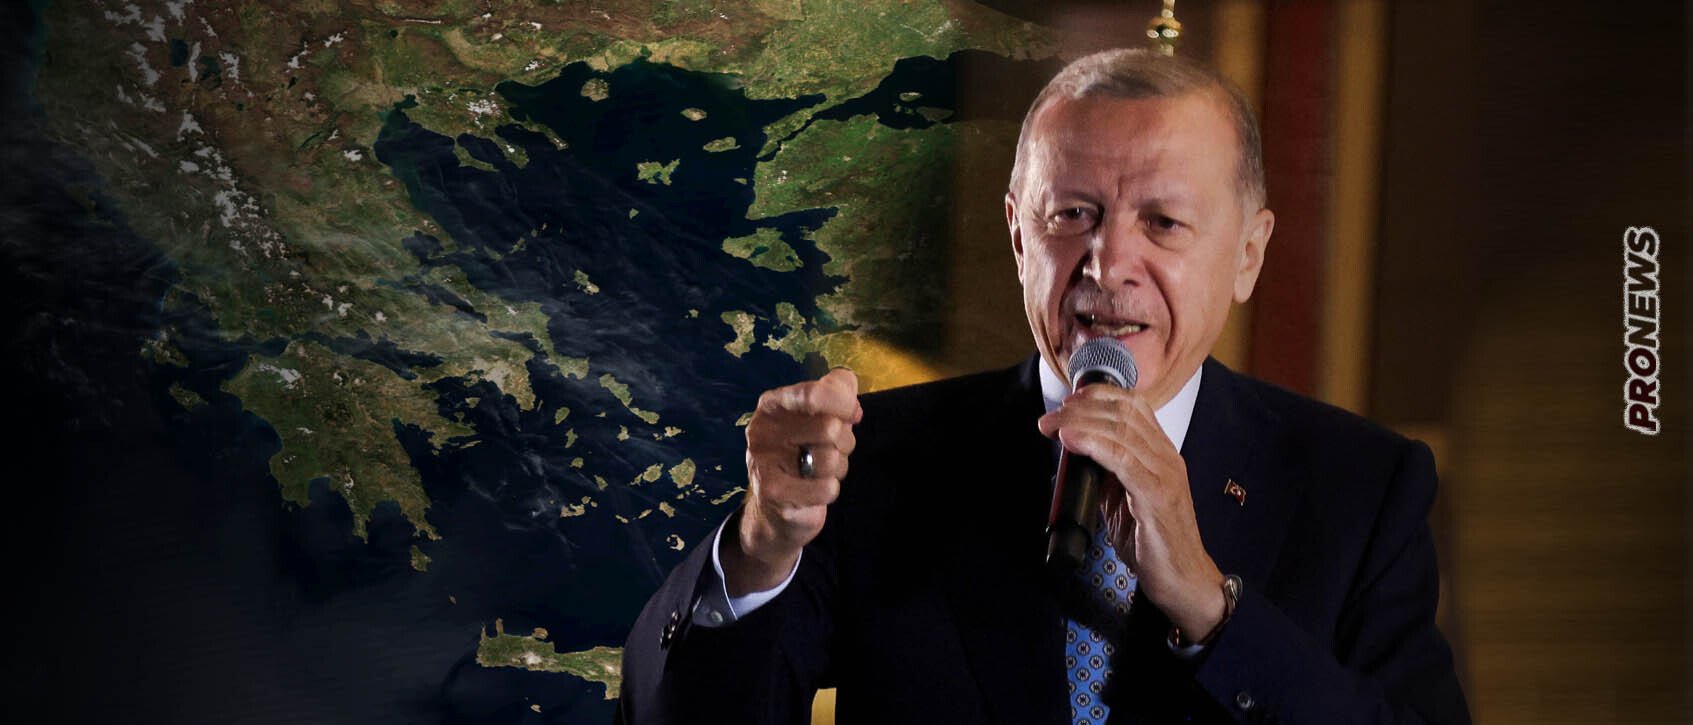 Σκληραίνει τη θέση του ο Ρ.Τ.Ερντογάν απέναντι στην Ελλάδα: «Αν δεν θέλουν ειρήνη υπάρχουν και άλλοι δρόμοι»